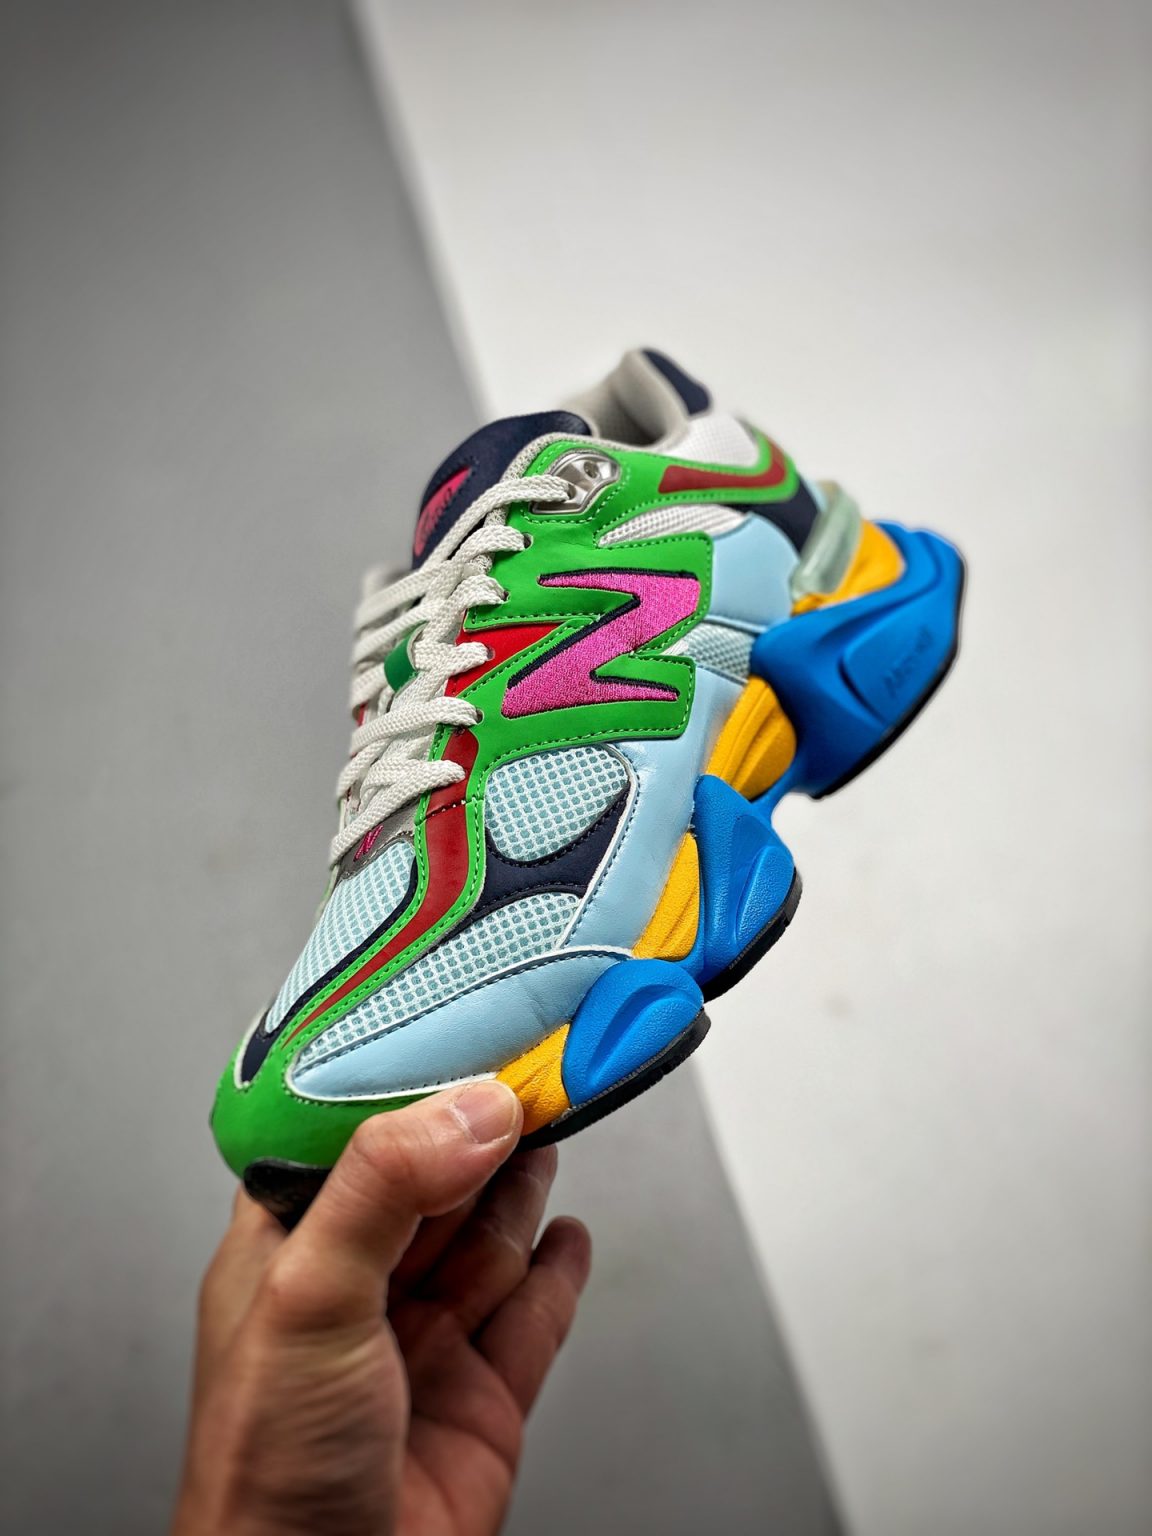 New Balance 9060 ‘Multi-Color’ For Sale – Sneaker Hello